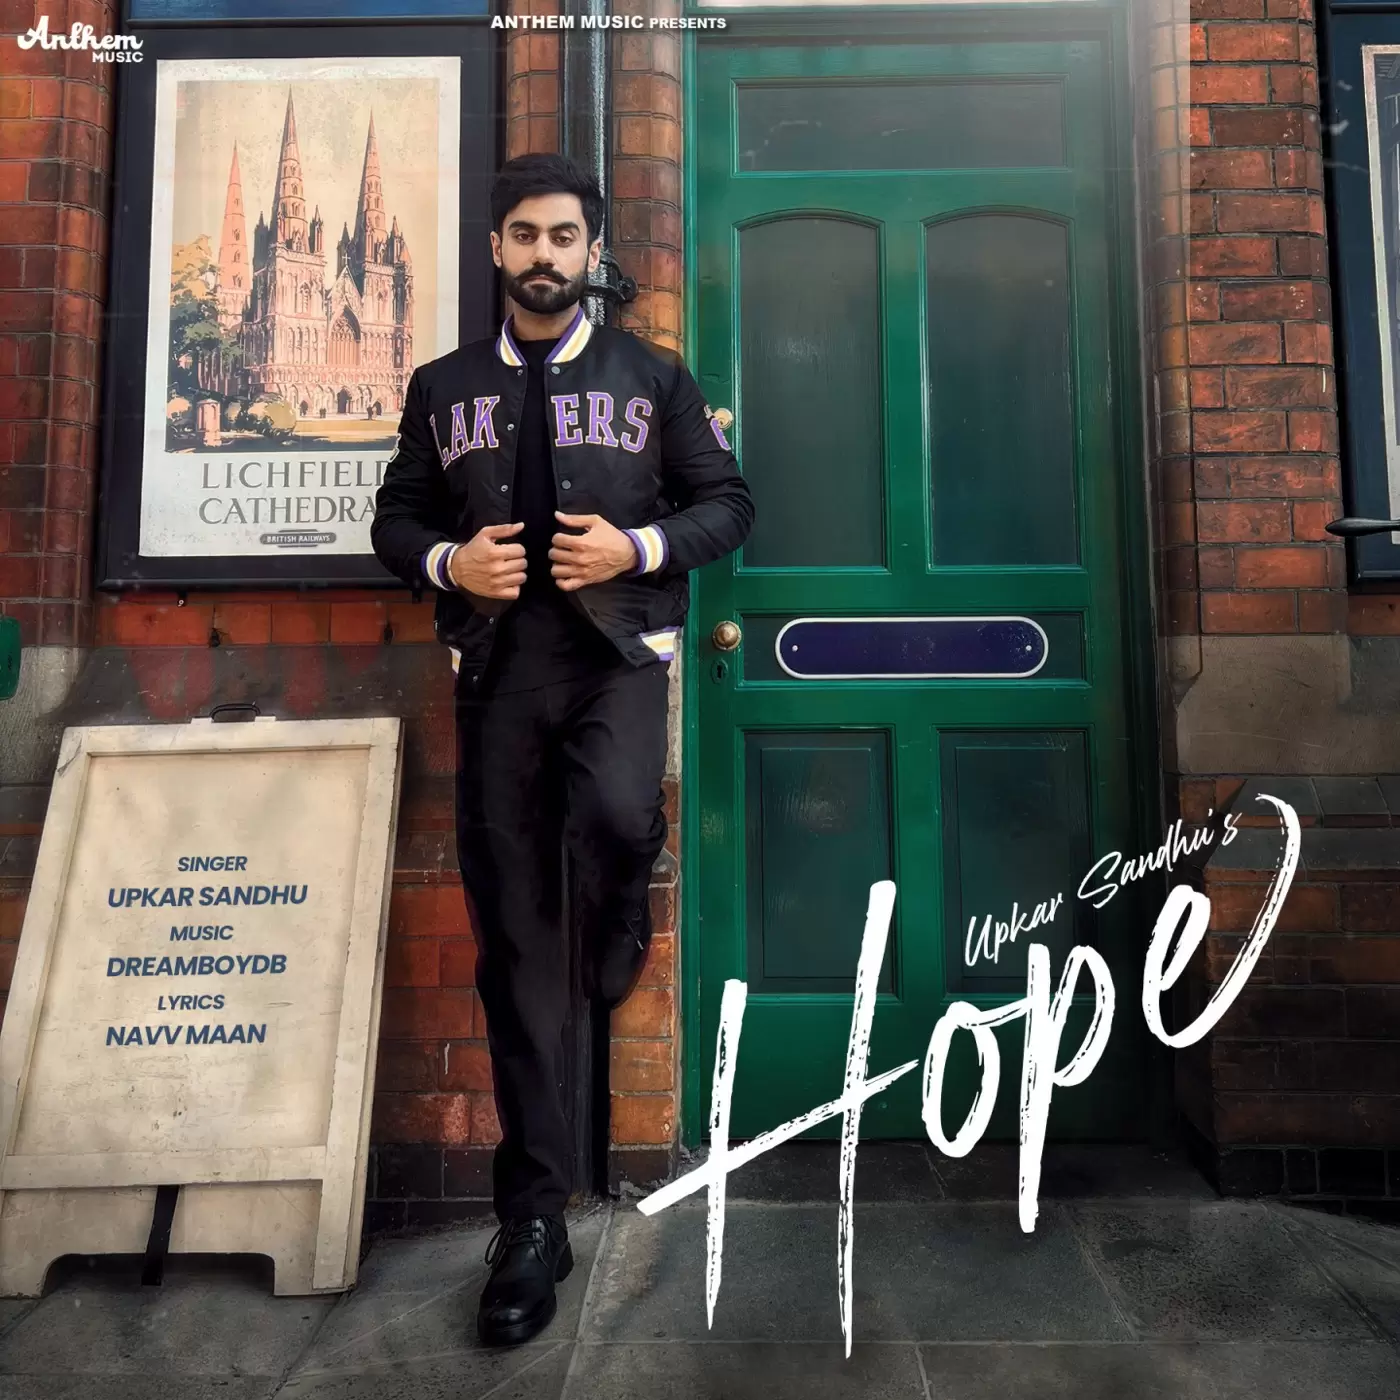 Hope - Single Song by Upkar Sandhu - Mr-Punjab